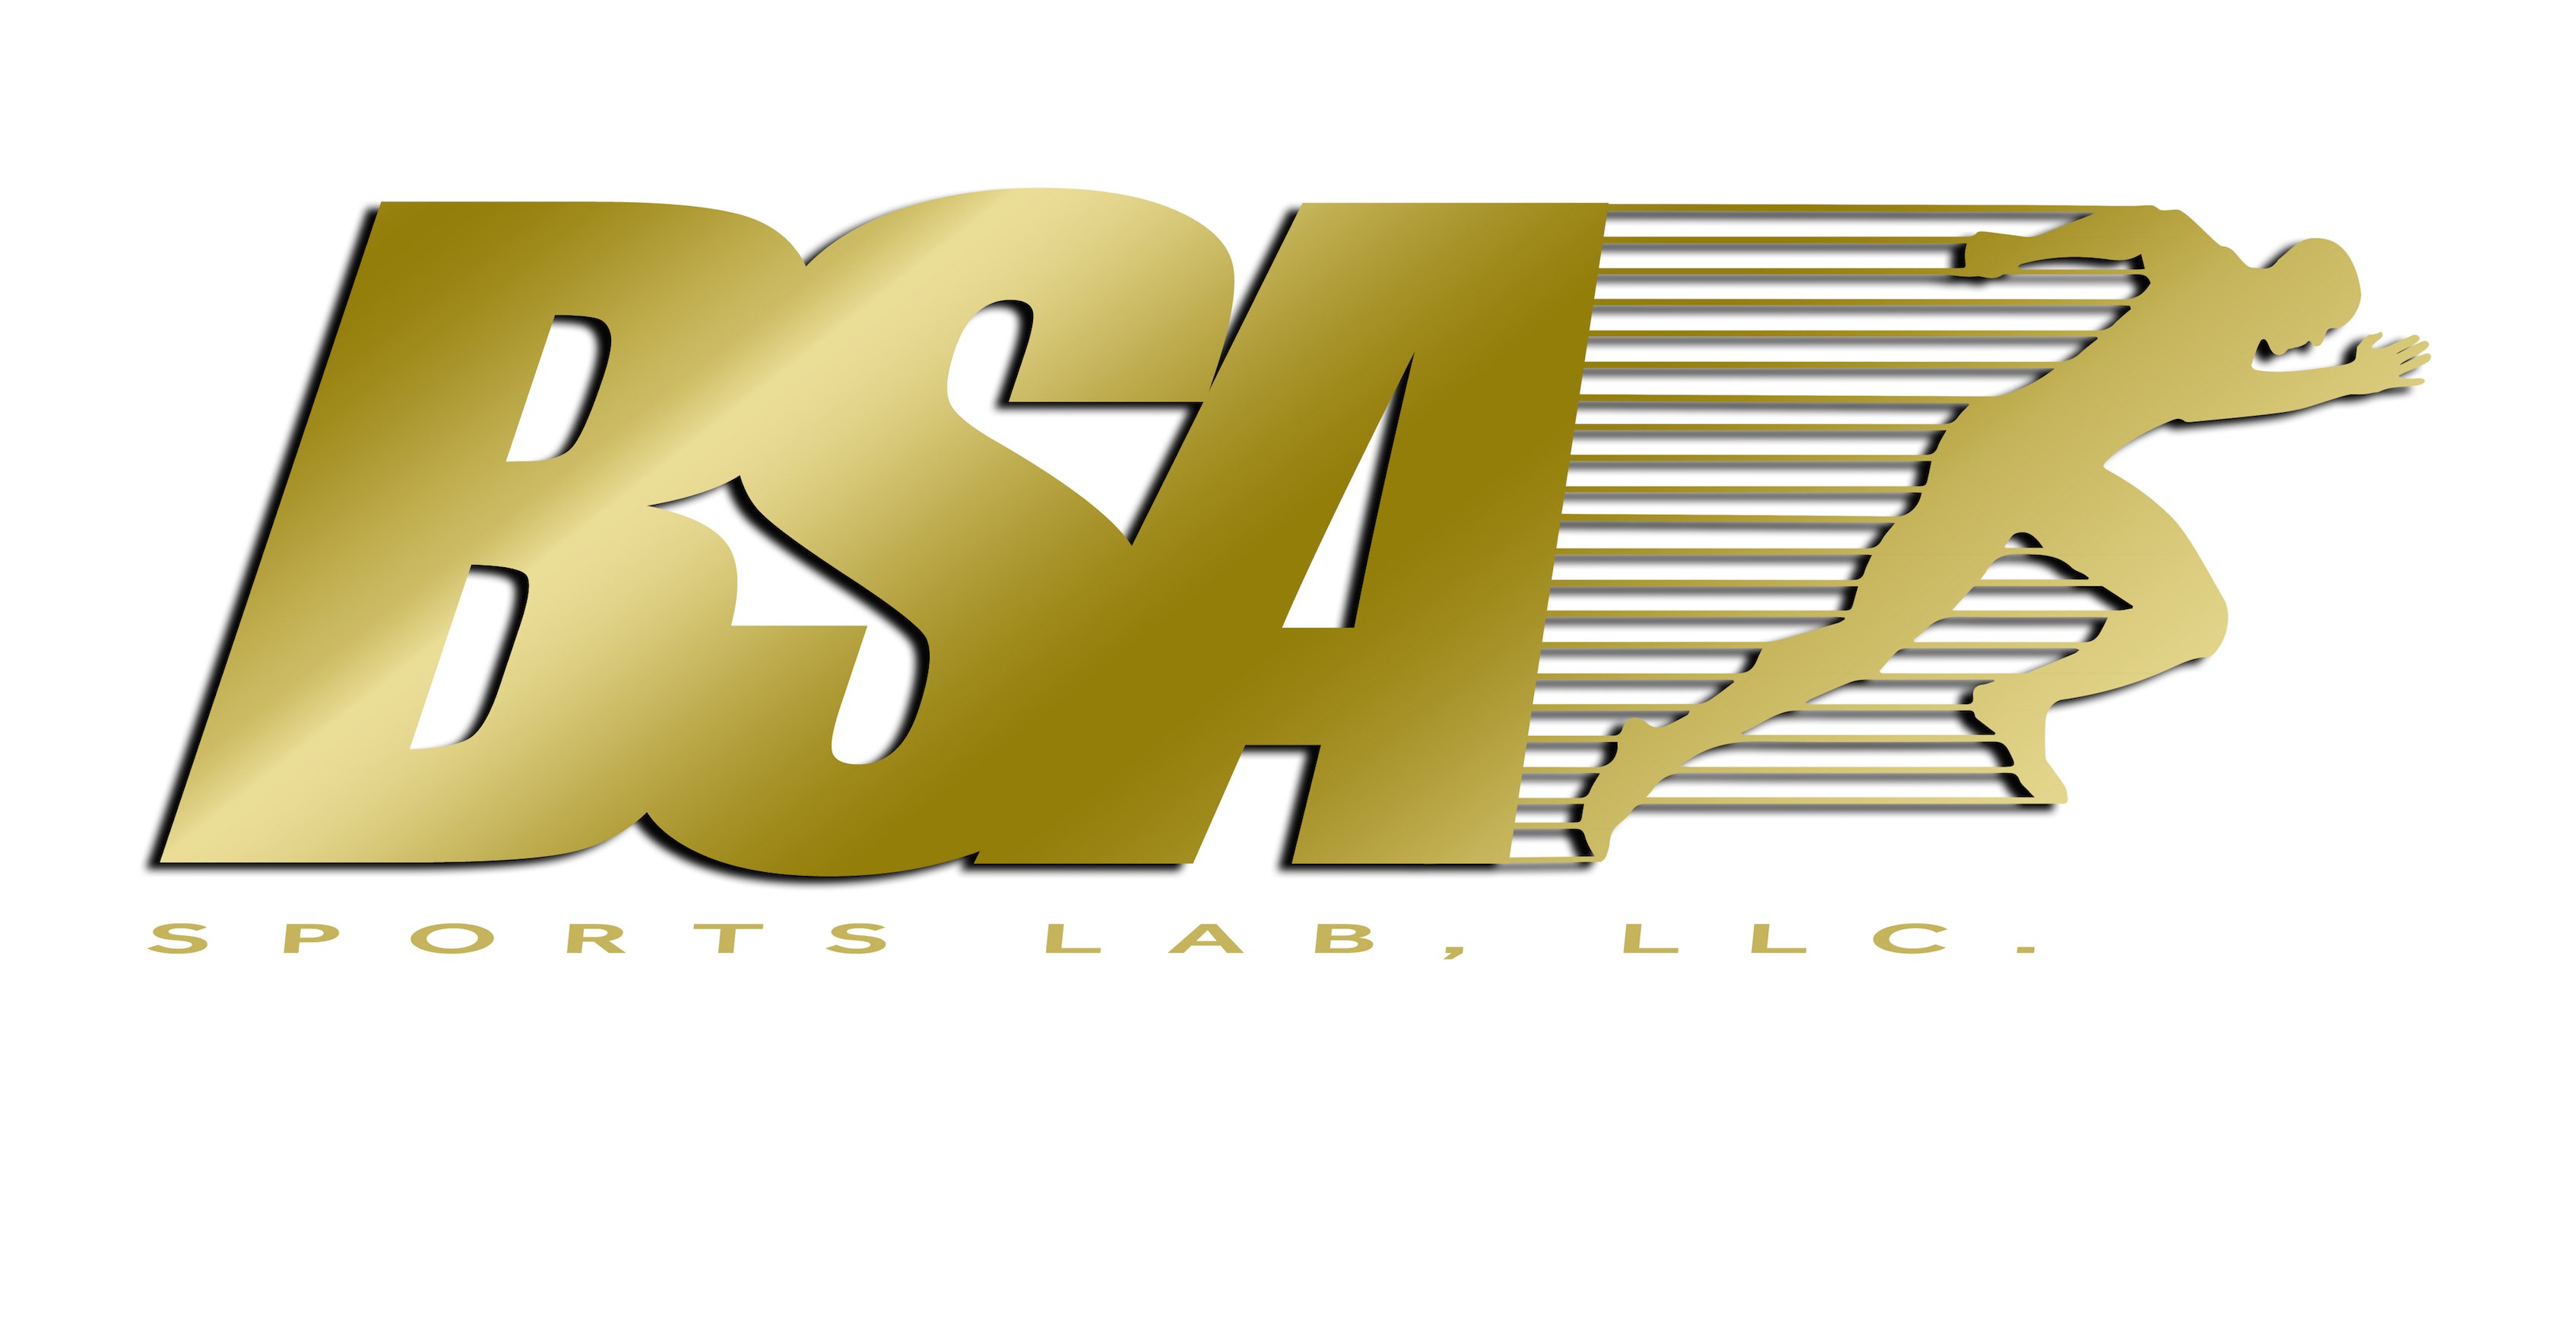 focus Meyella Sturen BSA SPORTS LAB, LLC. - Jeremy S. Walden Trademark Registration